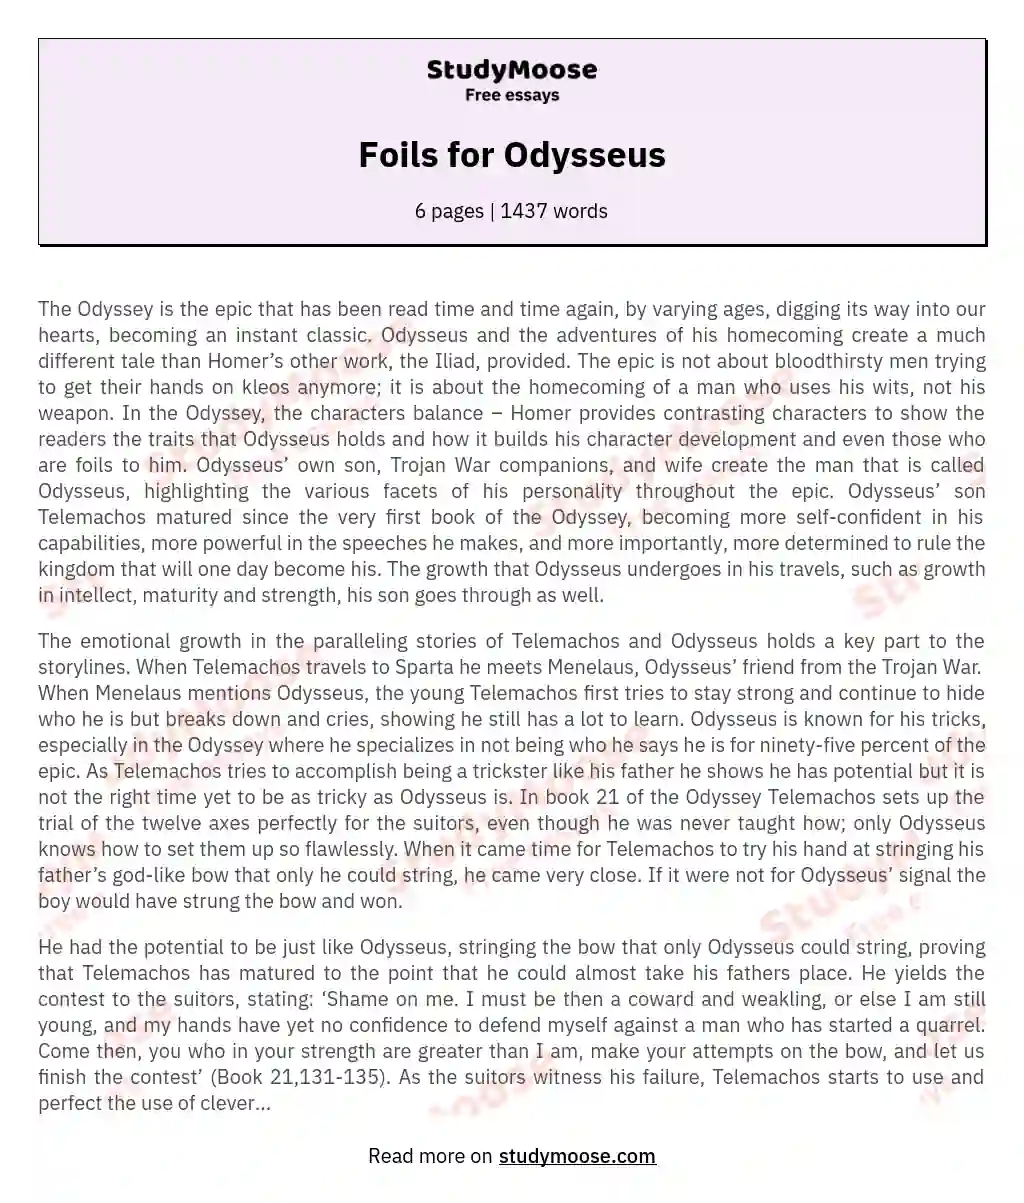 Foils for Odysseus essay